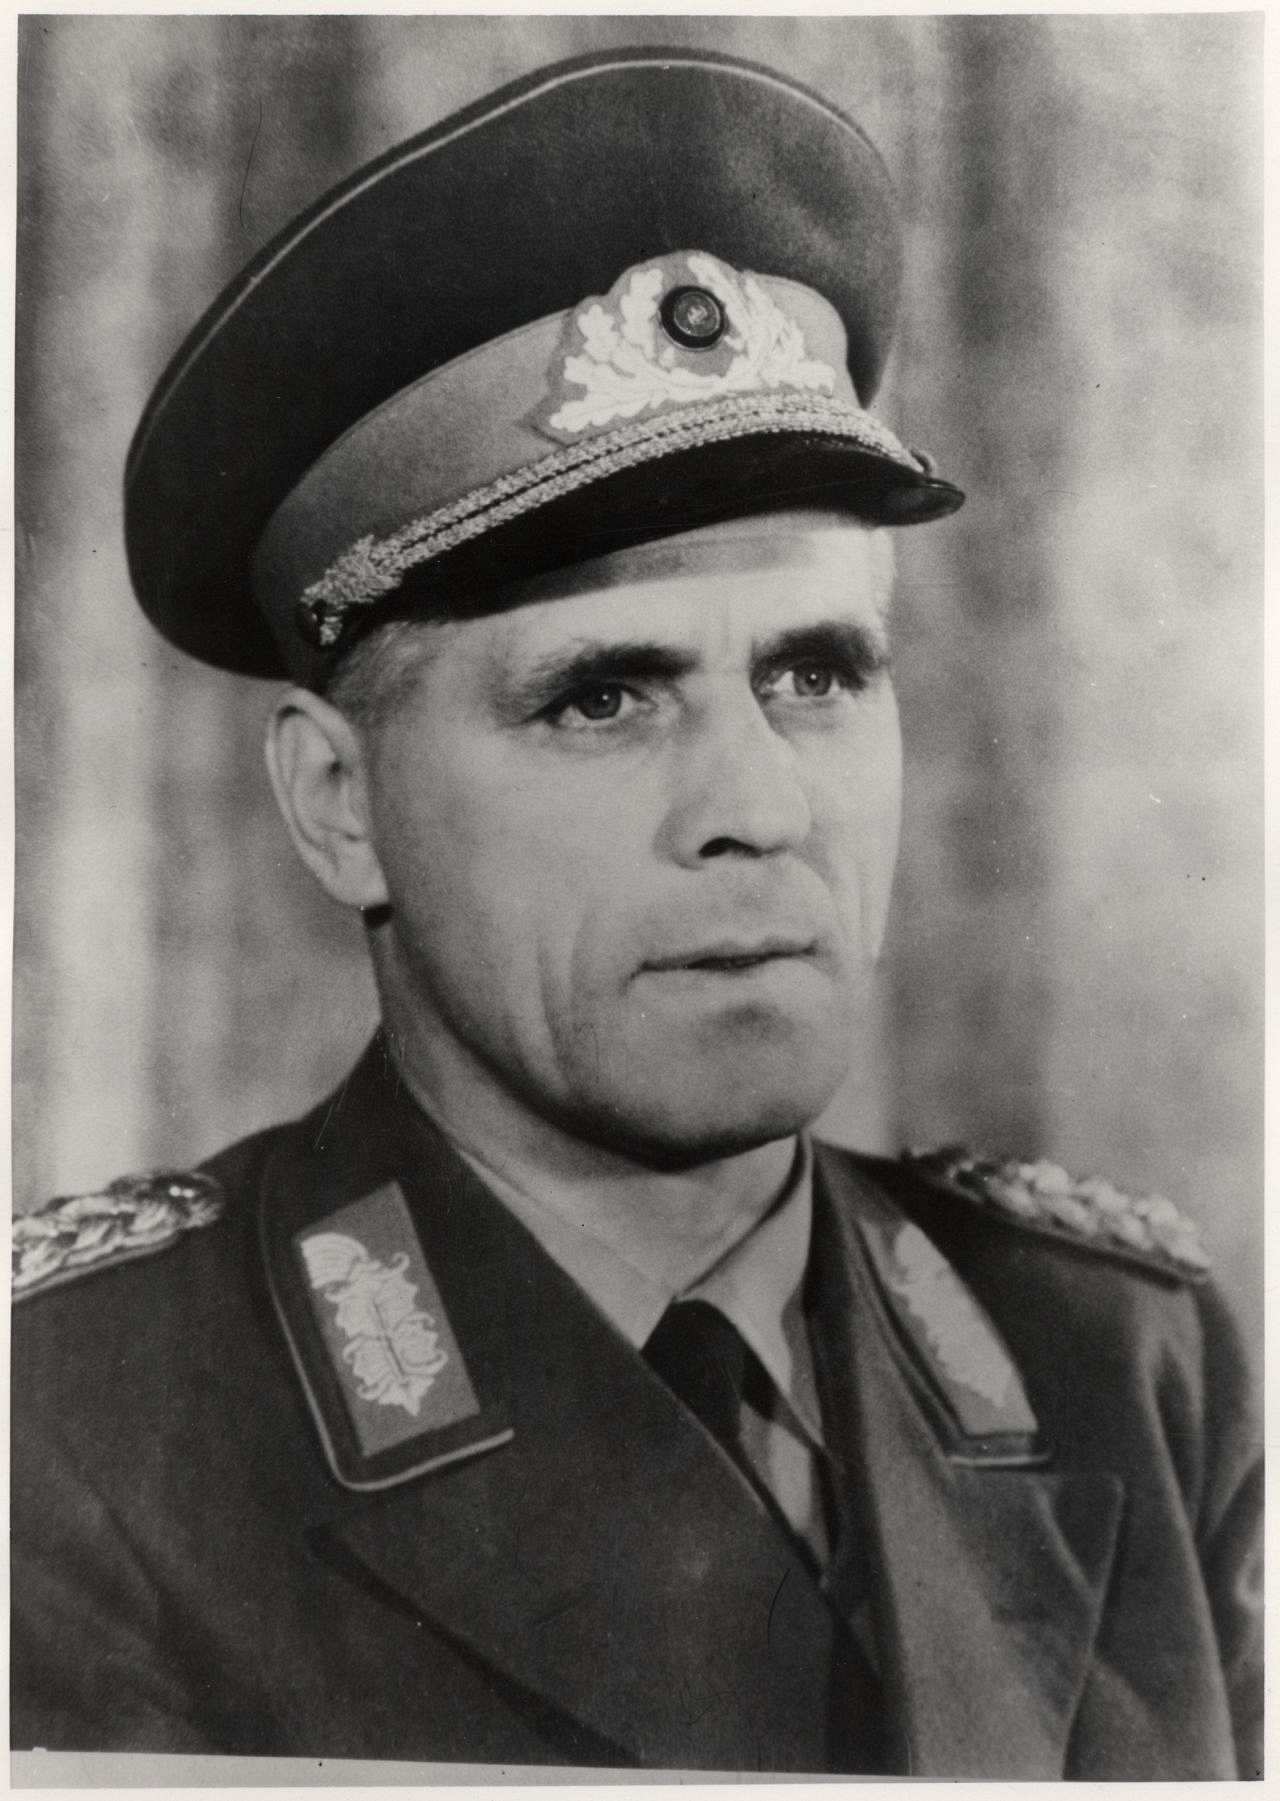 Porträtfoto von DDR-Generaloberst Willi Stoph, 1957.